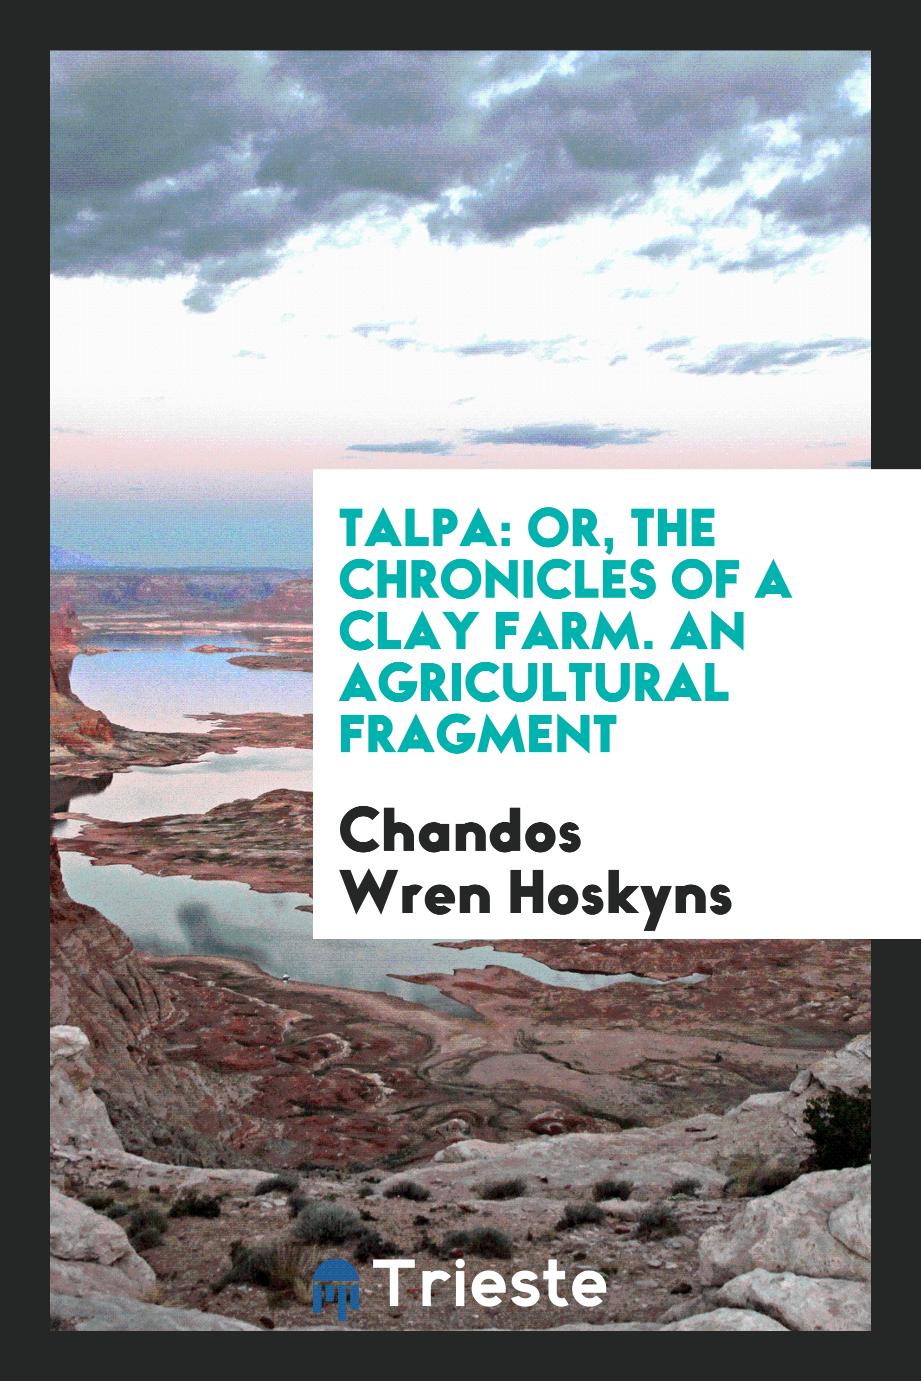 Chandos Wren Hoskyns - Talpa: Or, The Chronicles of a Clay Farm. An Agricultural Fragment